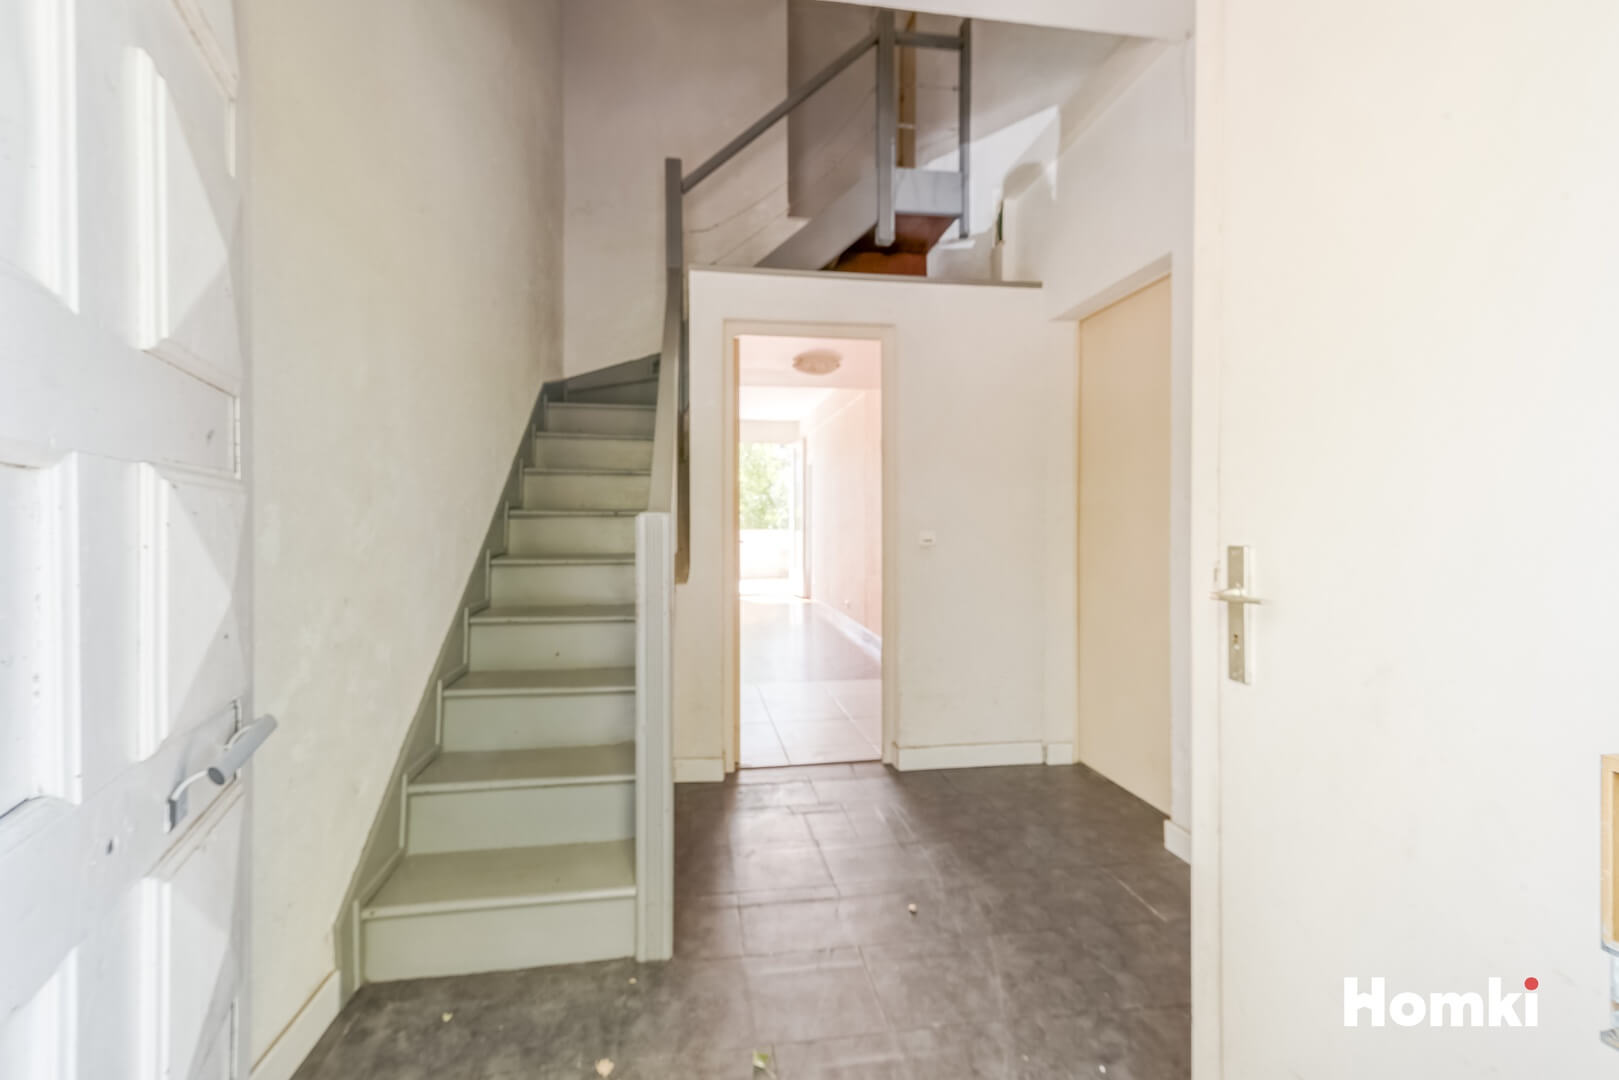 Homki - Vente Appartement  de 43.0 m² à Castelnau-le-Lez 34170